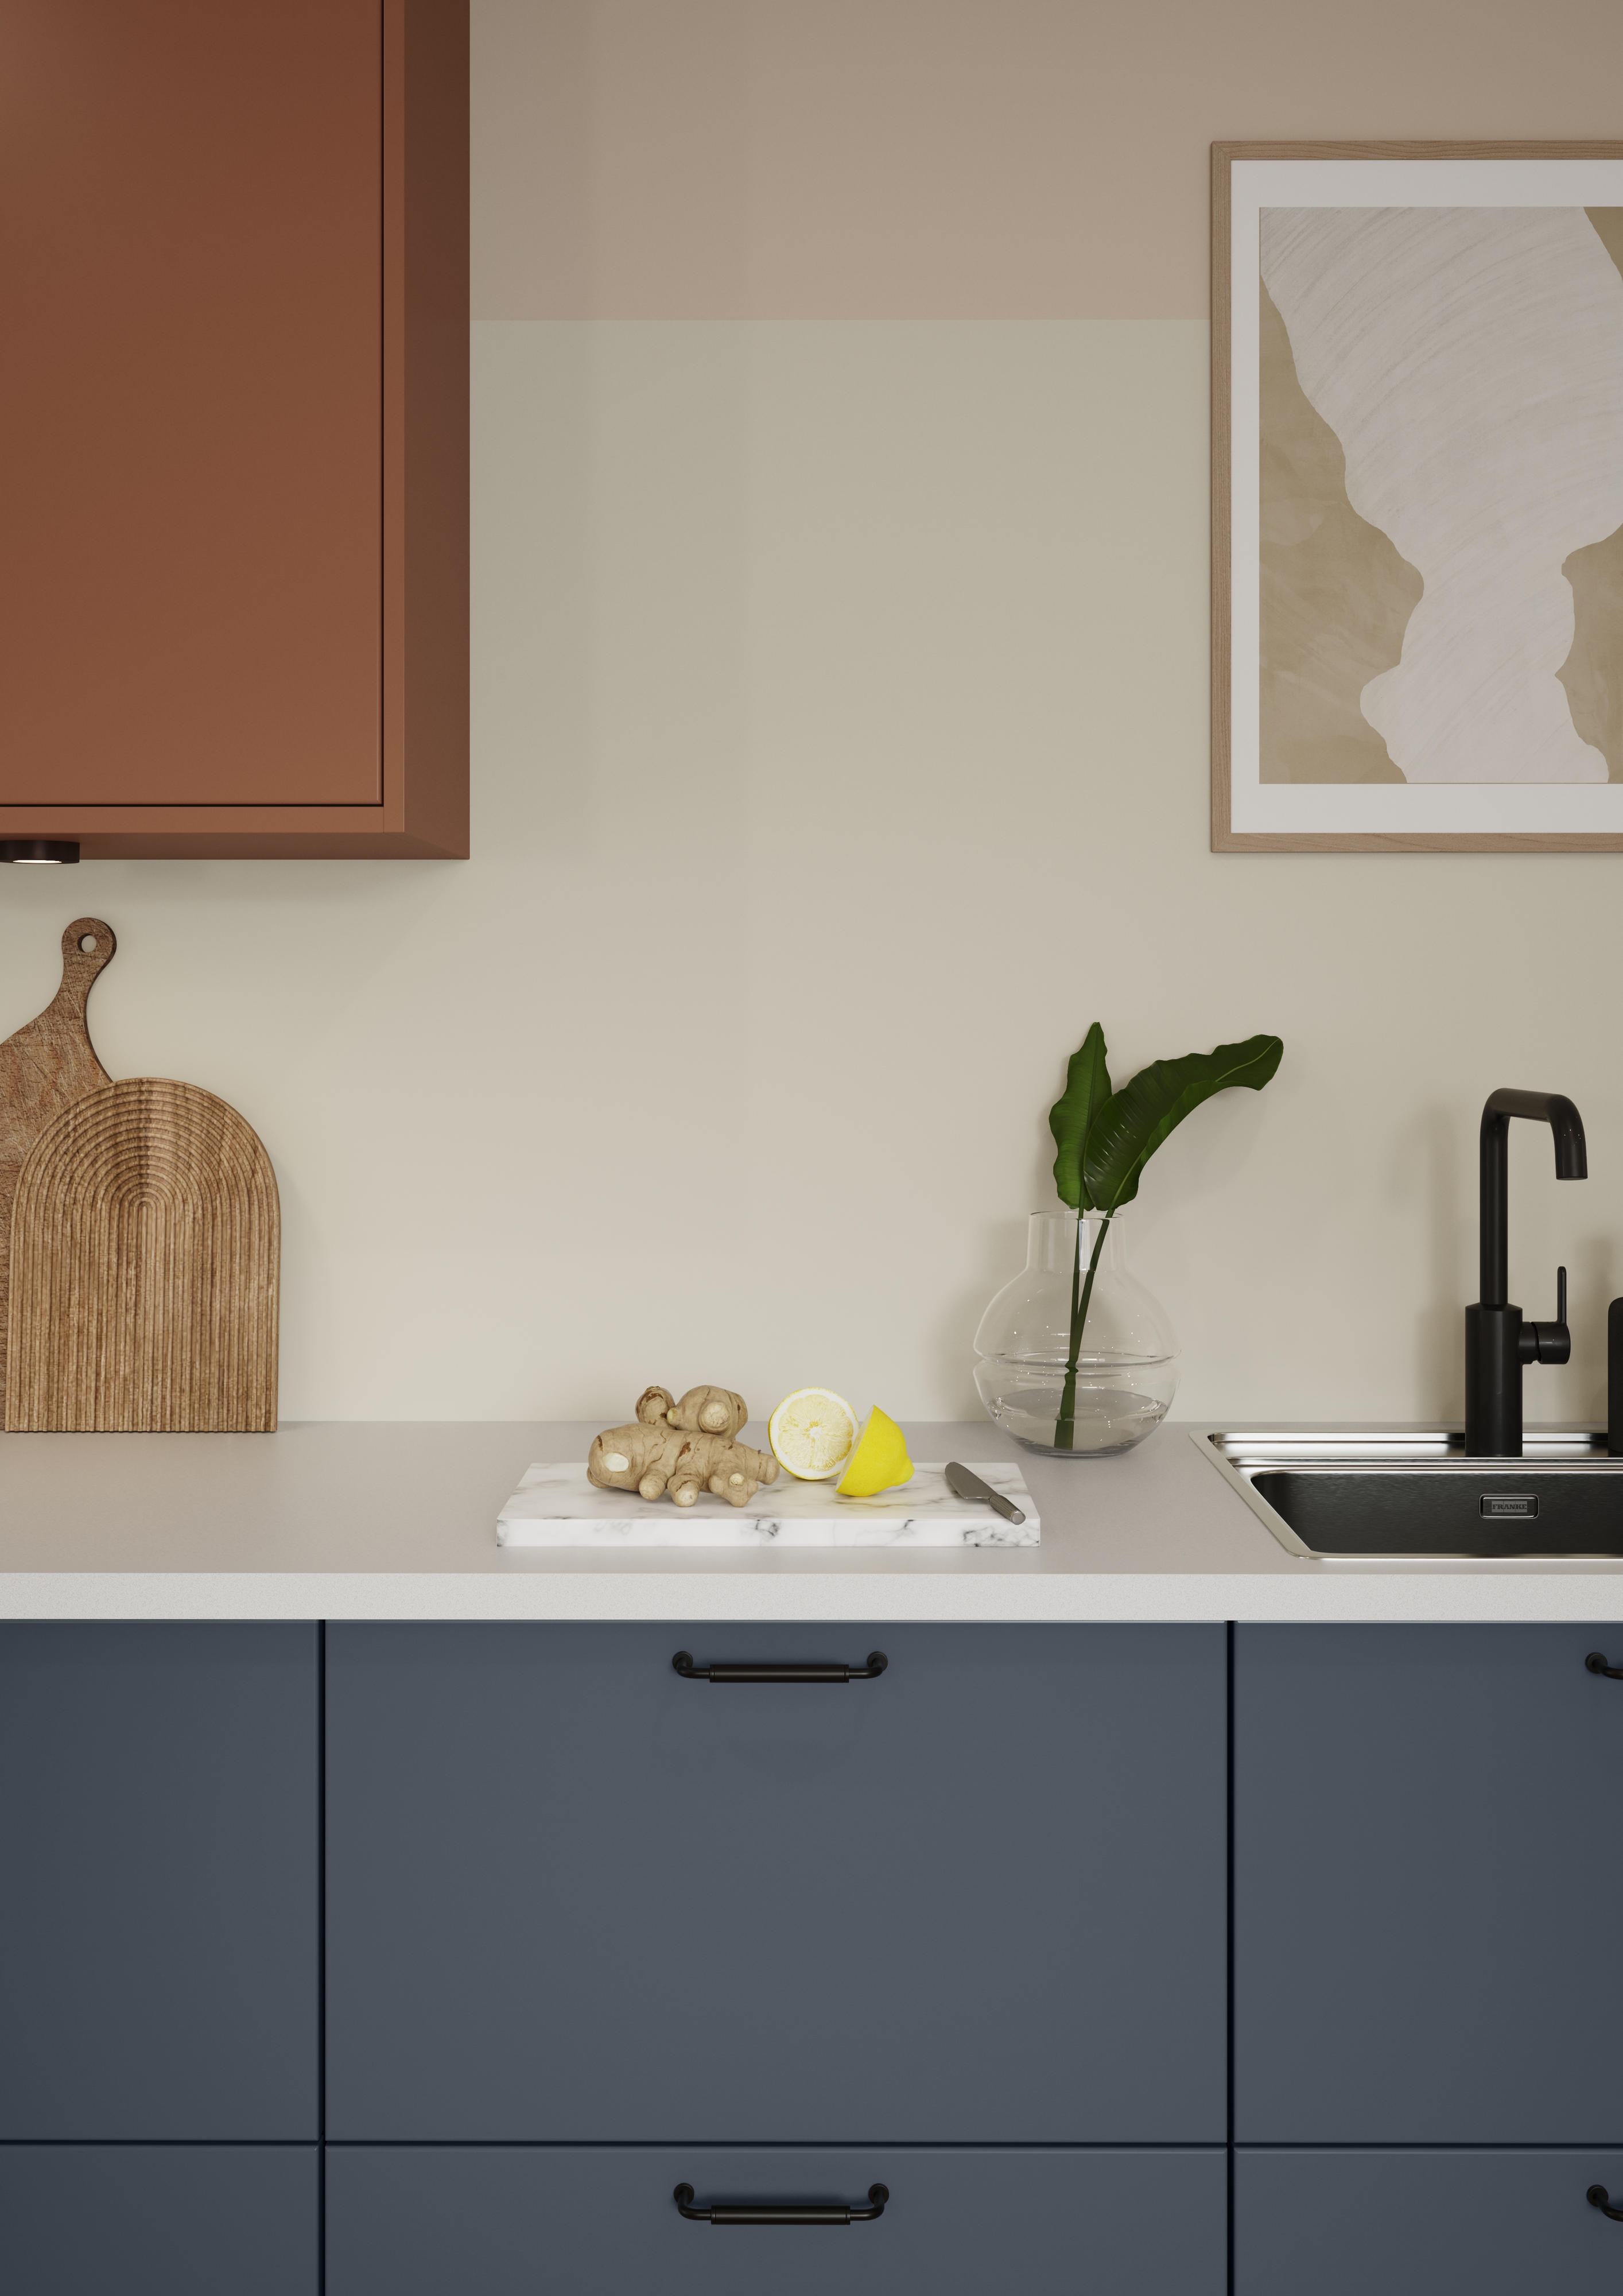 Udsnit af Trend Blue Grey og Sienna køkkenet. Hvid bordplade, med sort håndvask, og skærebræt med grønsager på.